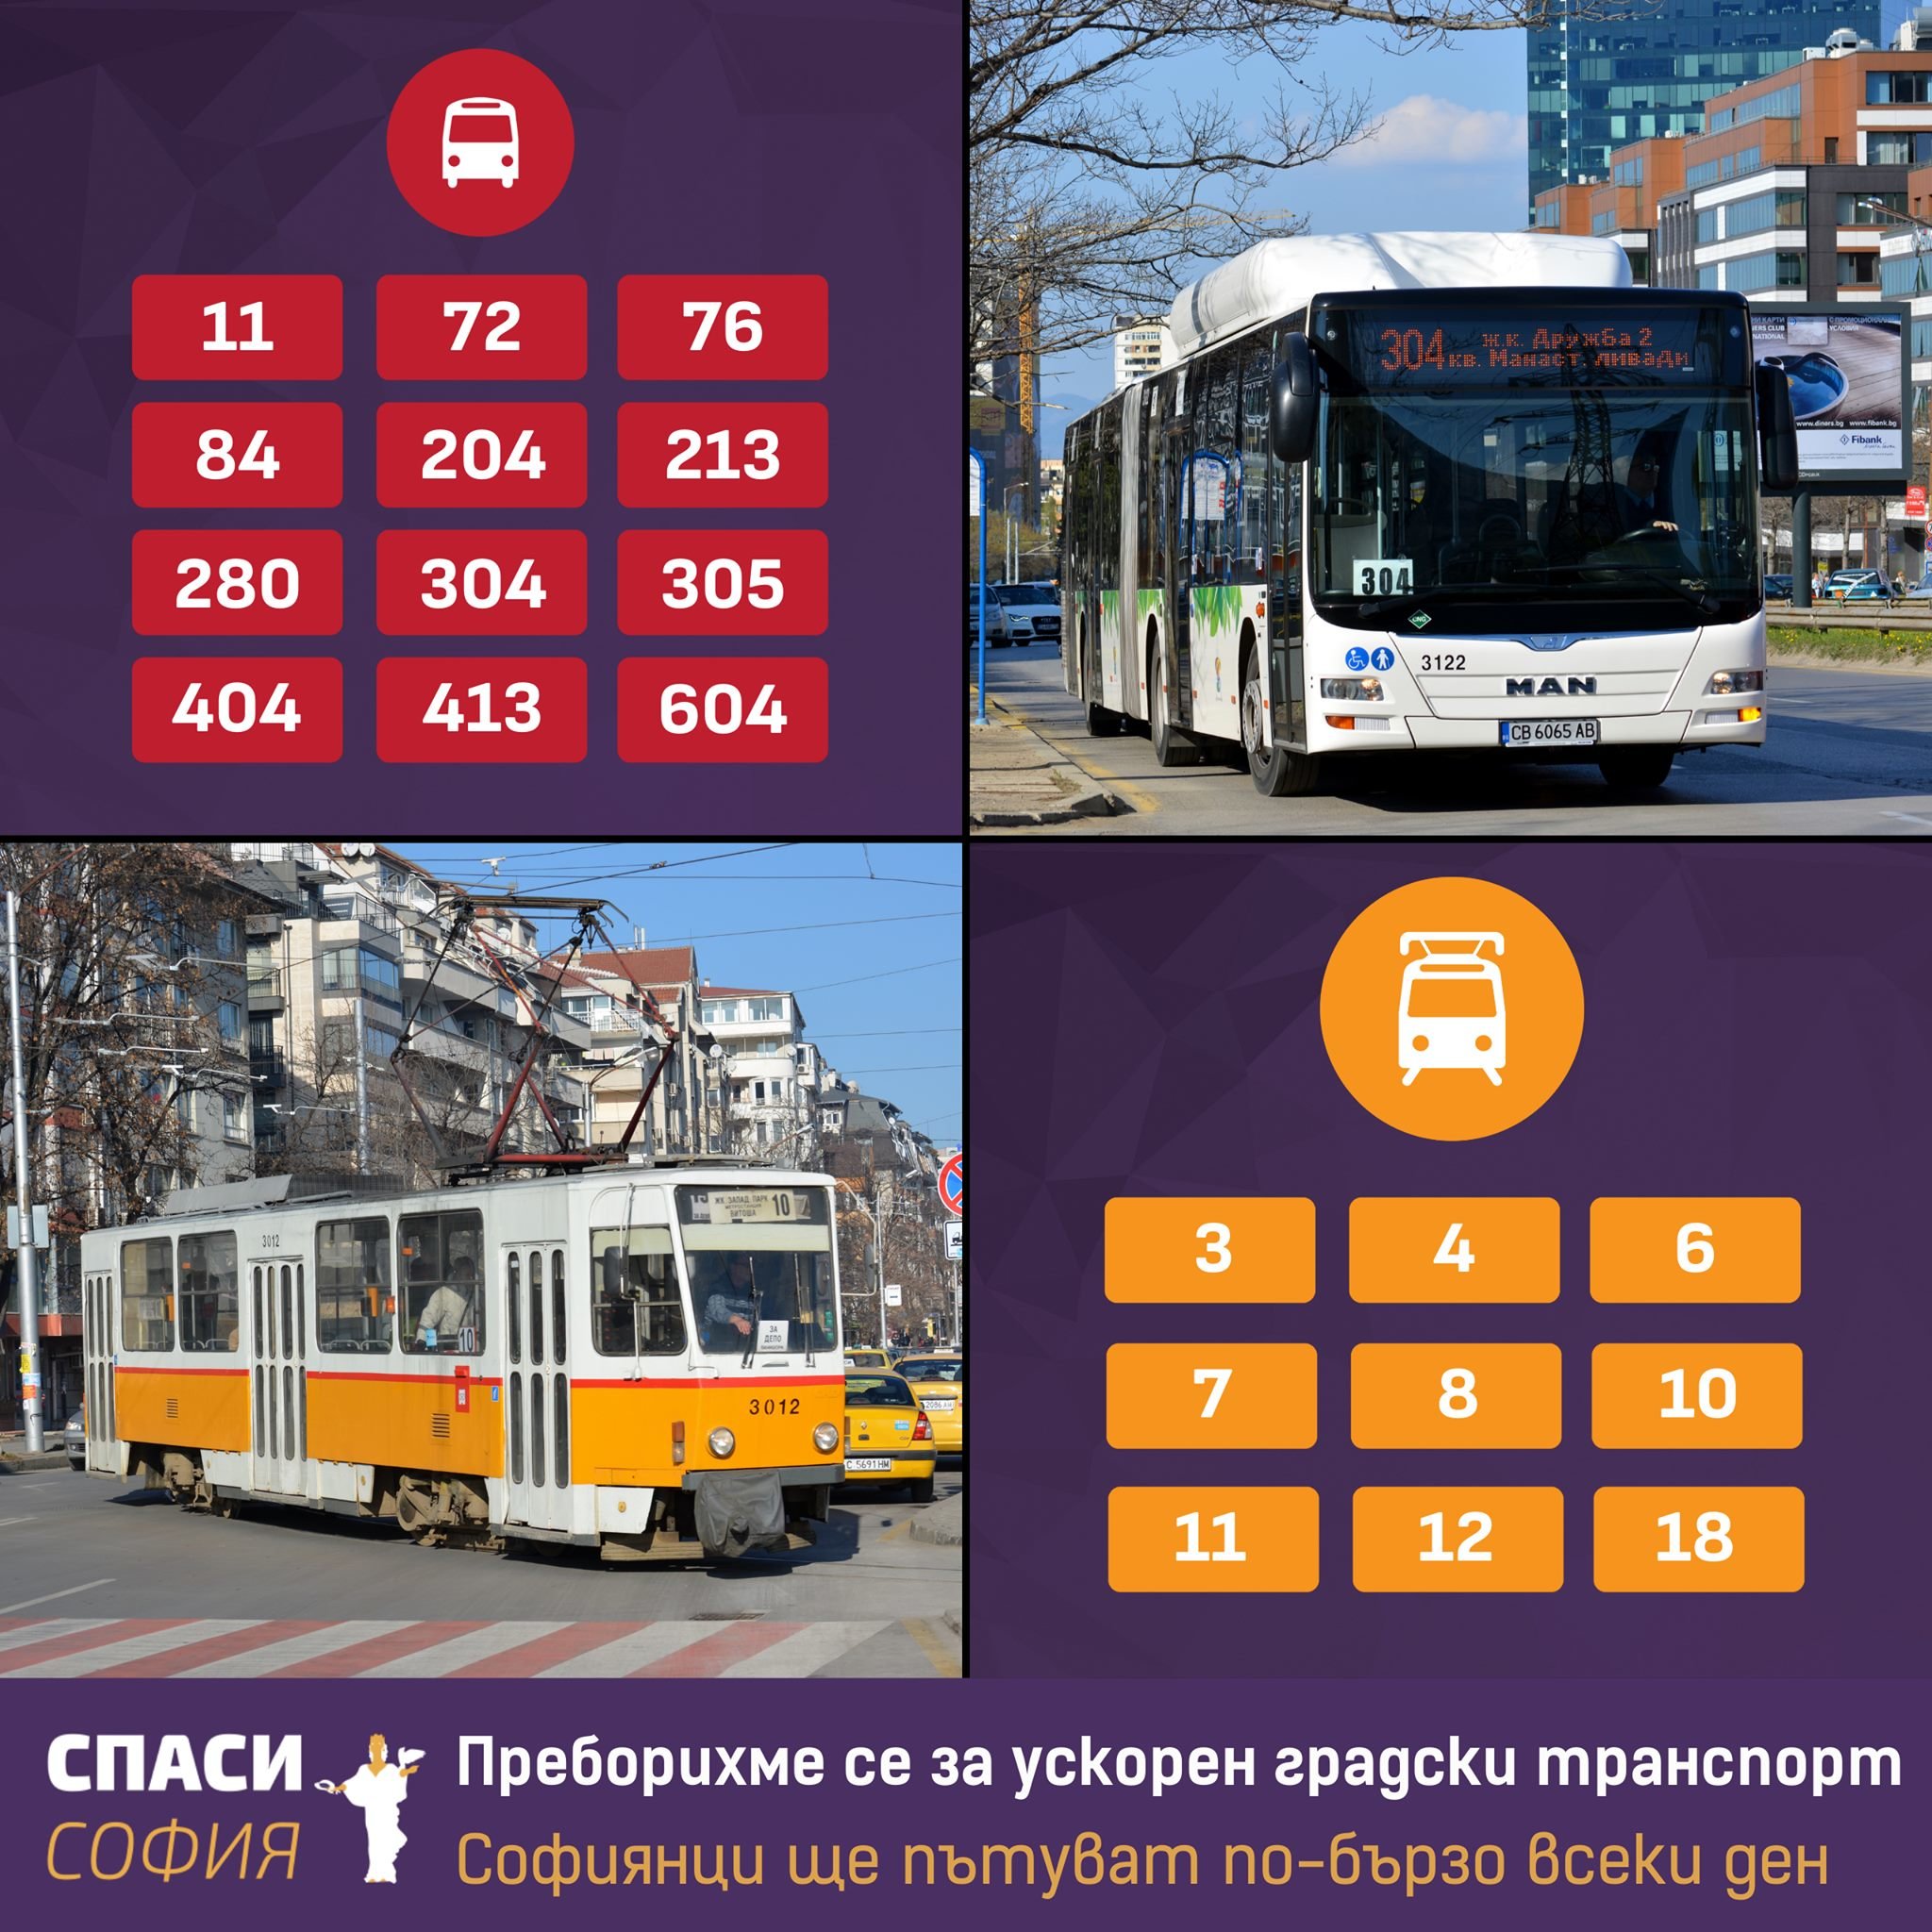 Нови ускорени разписания по основните автобусни и трамвайни линии с